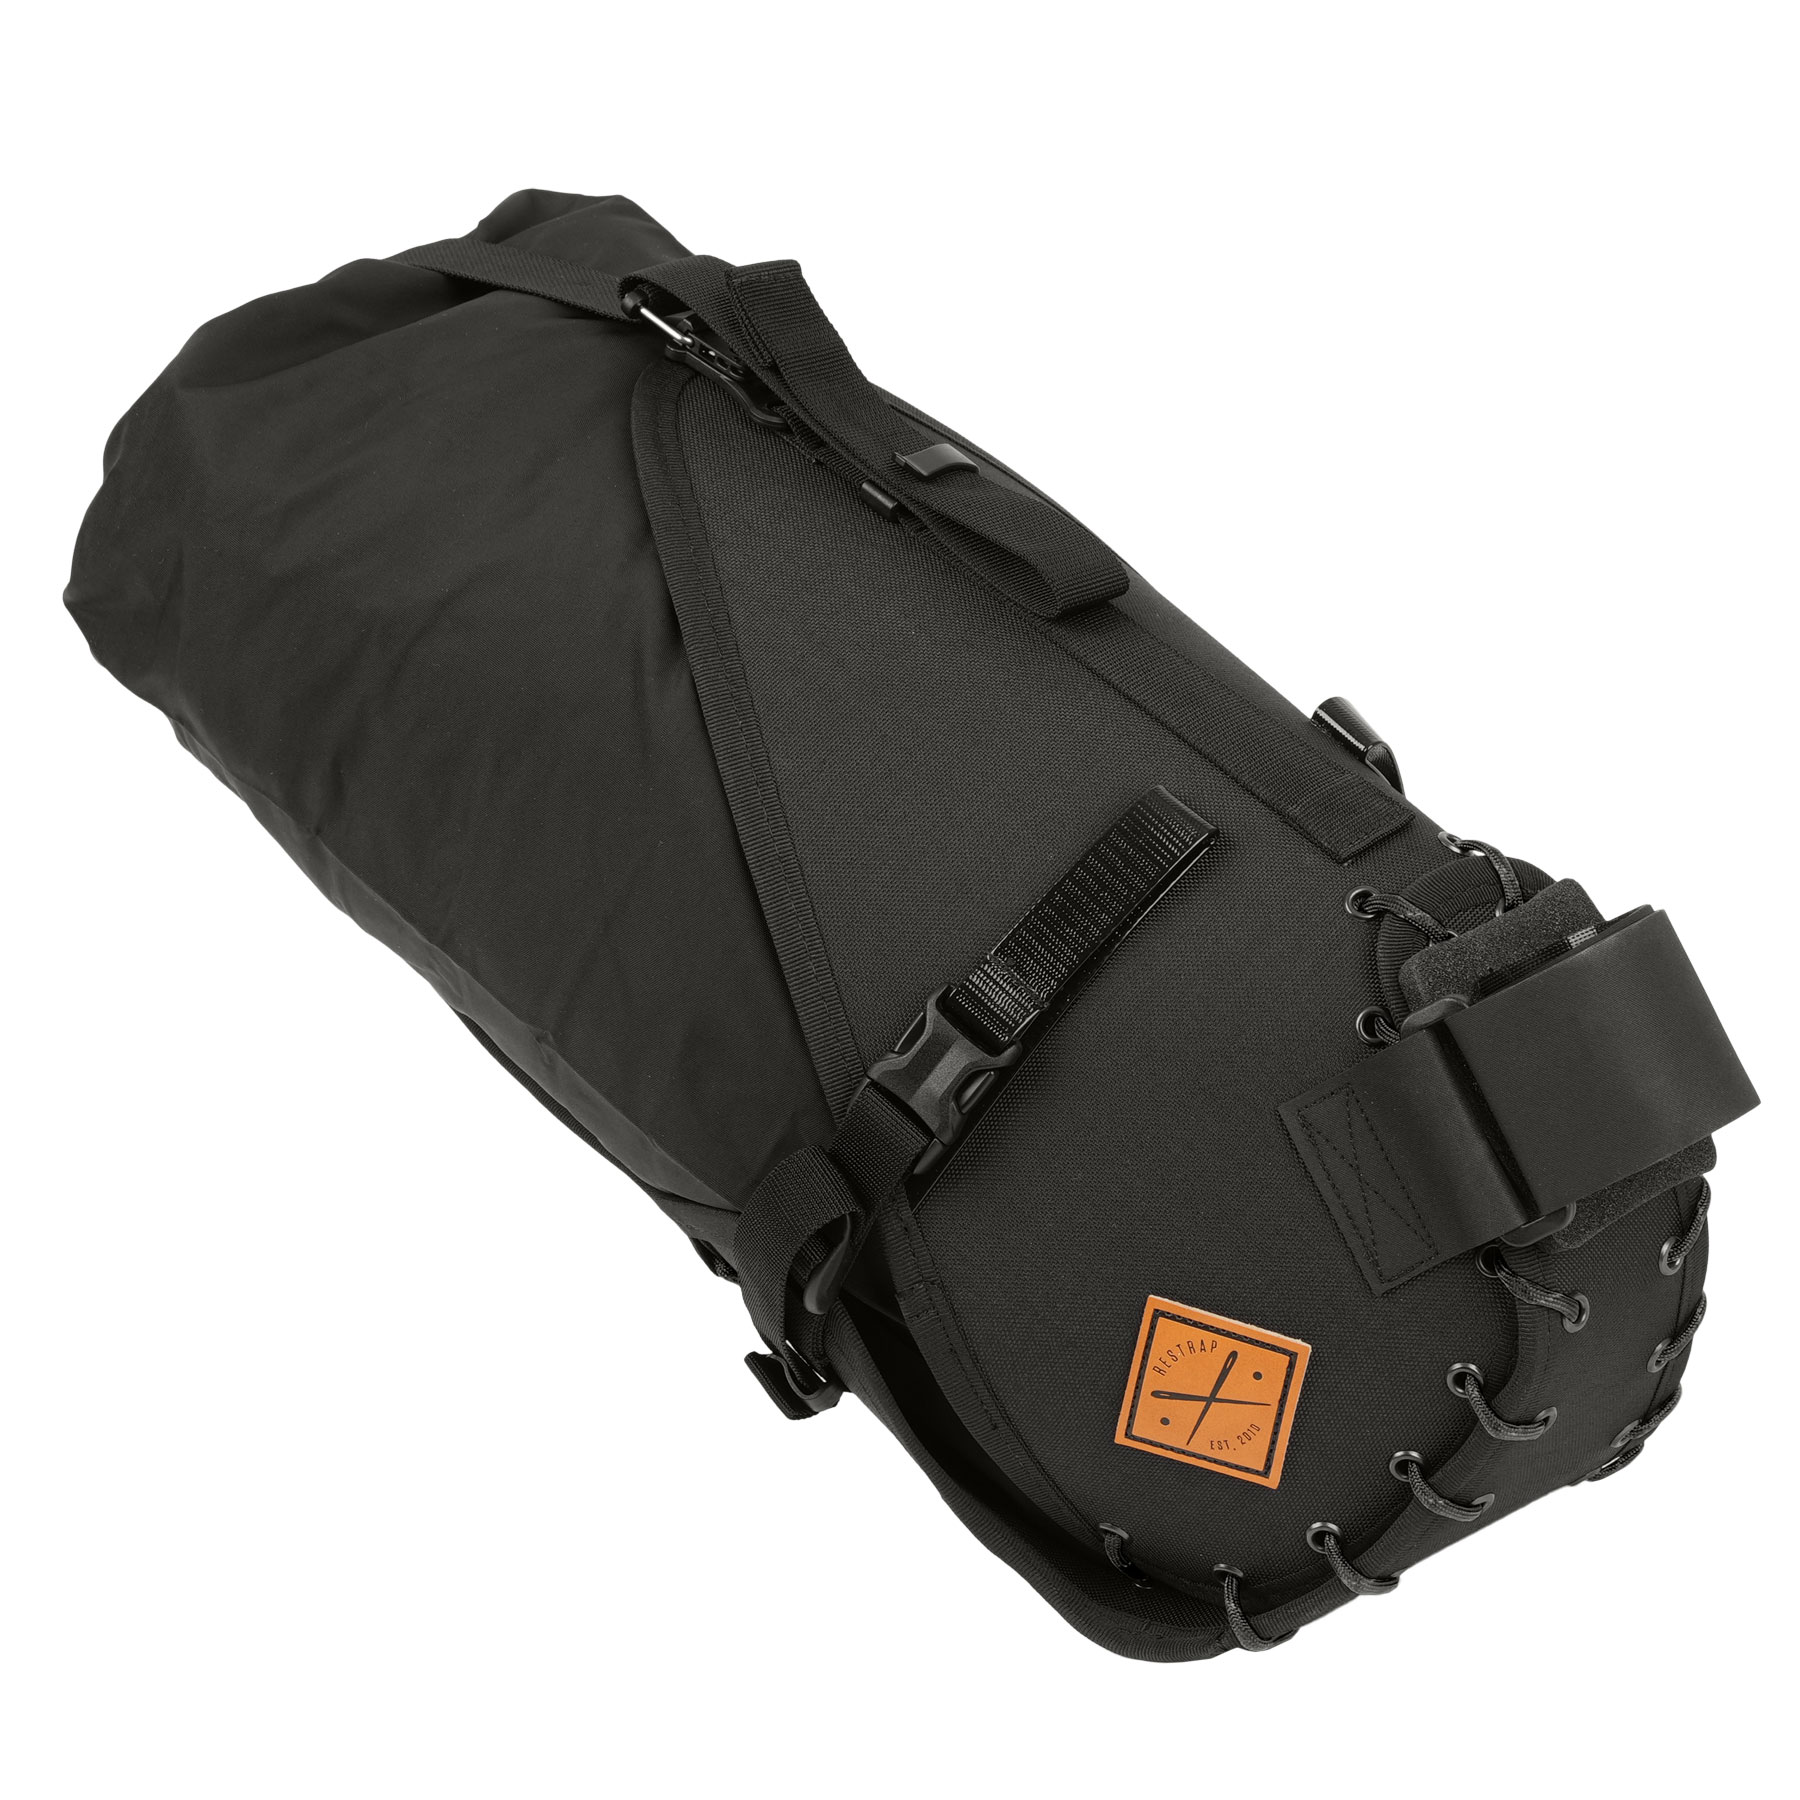 Produktbild von Restrap 14L Satteltasche mit Packsack - schwarz